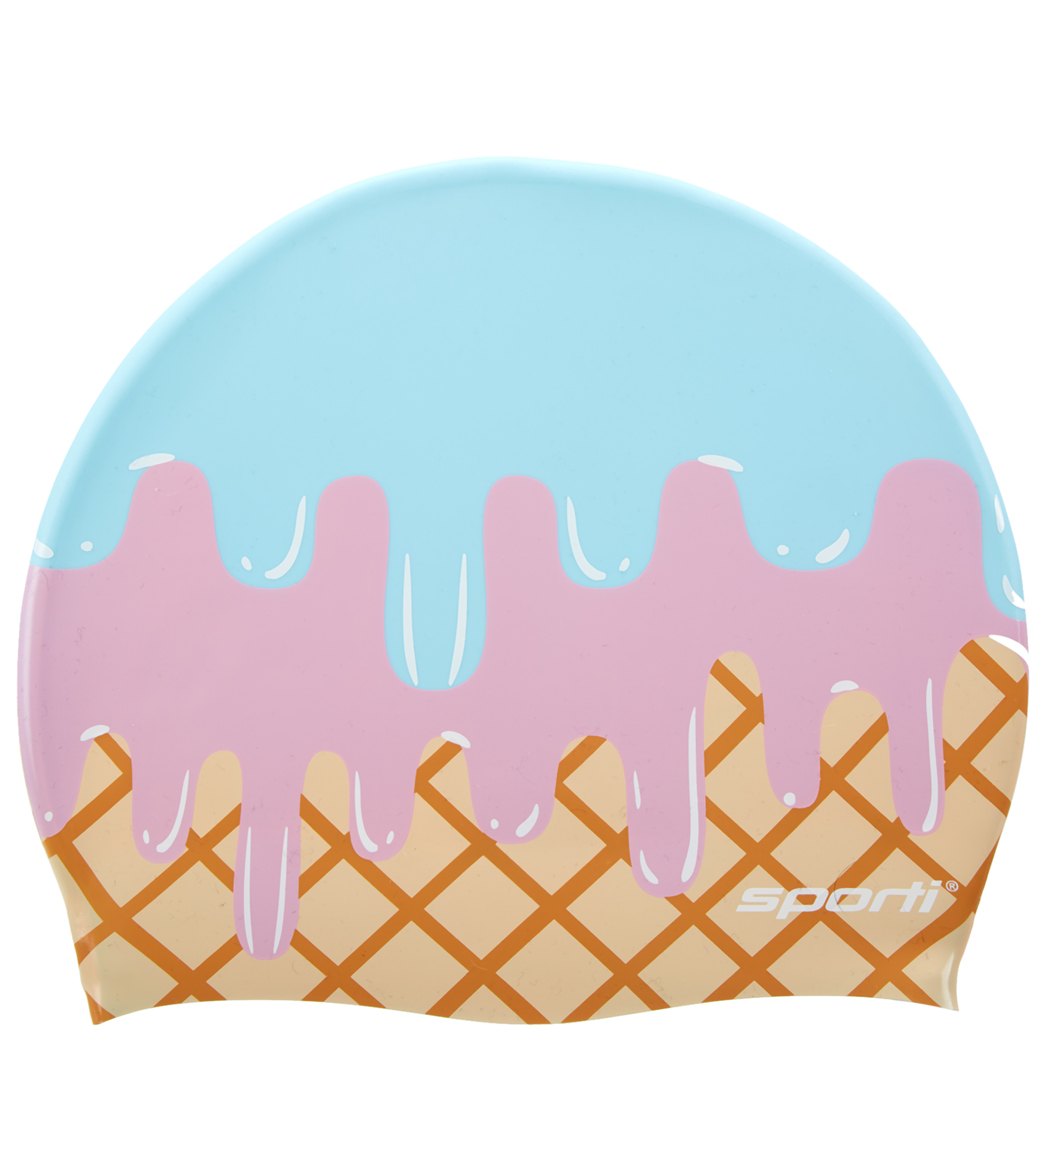 blue ice cream scoop